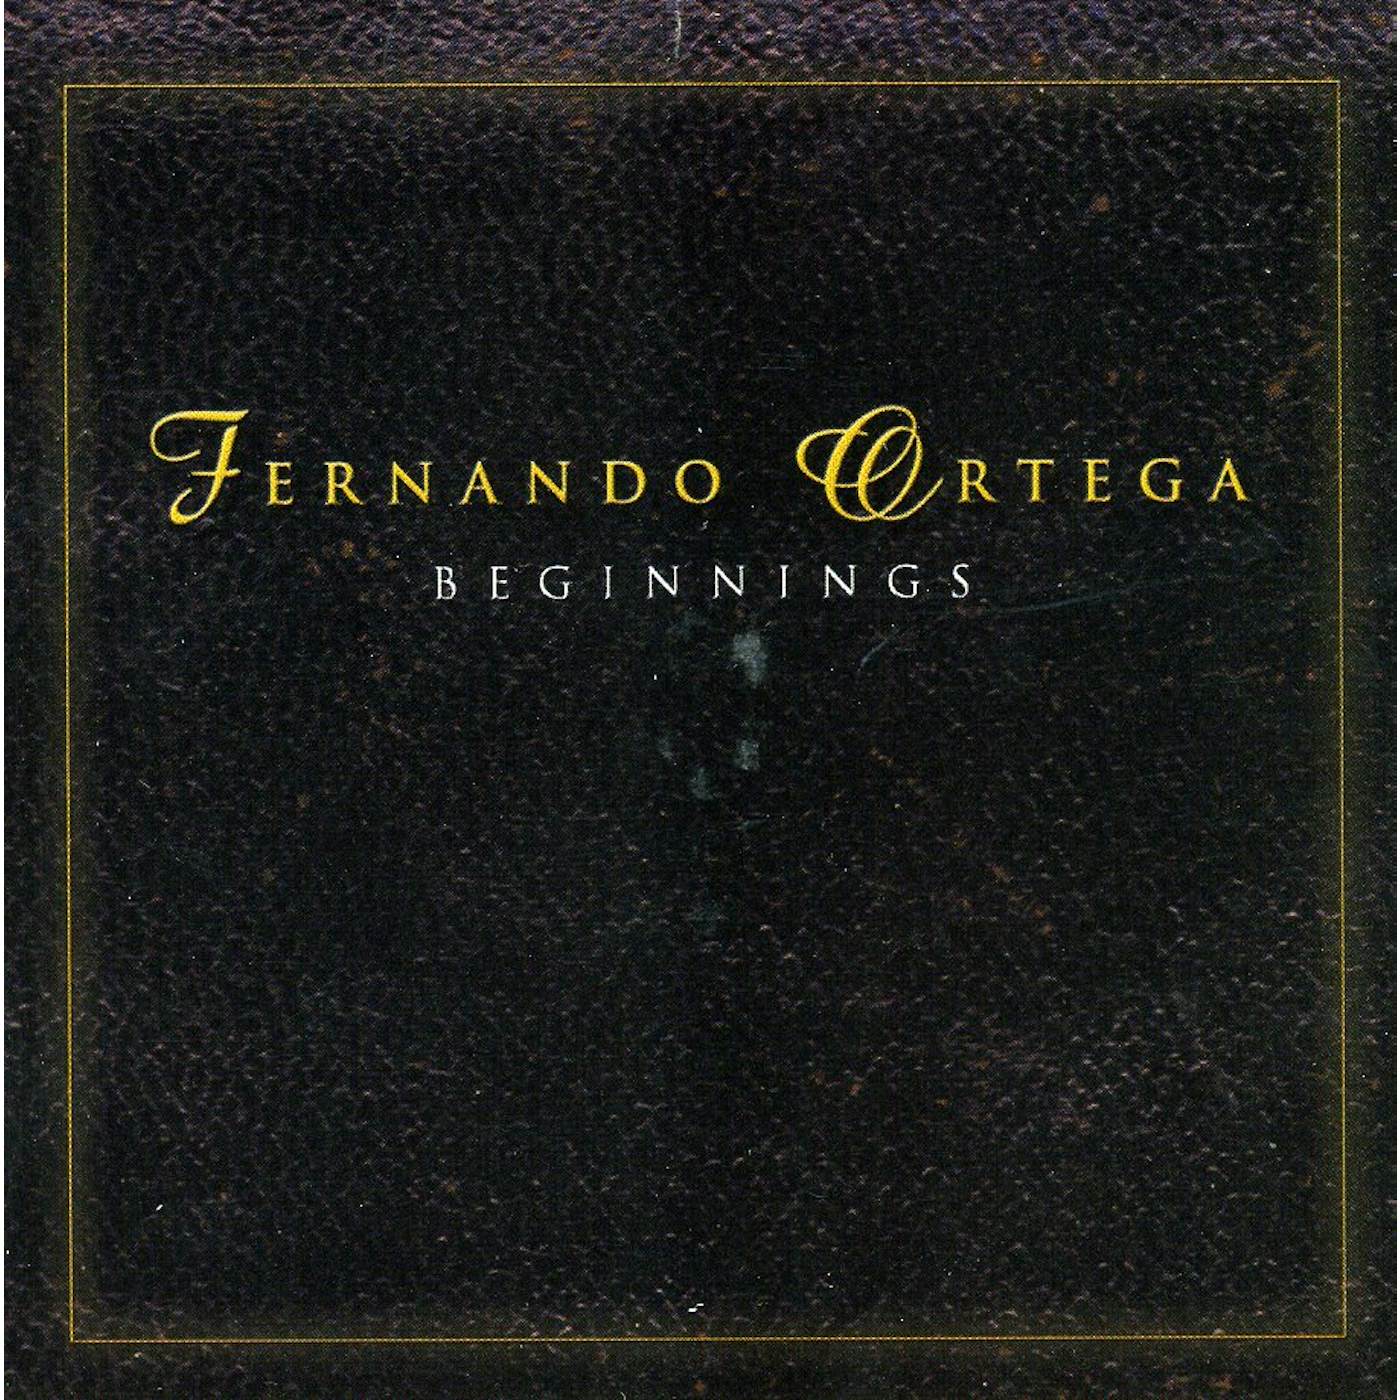 Fernando Ortega BEGINNINGS CD